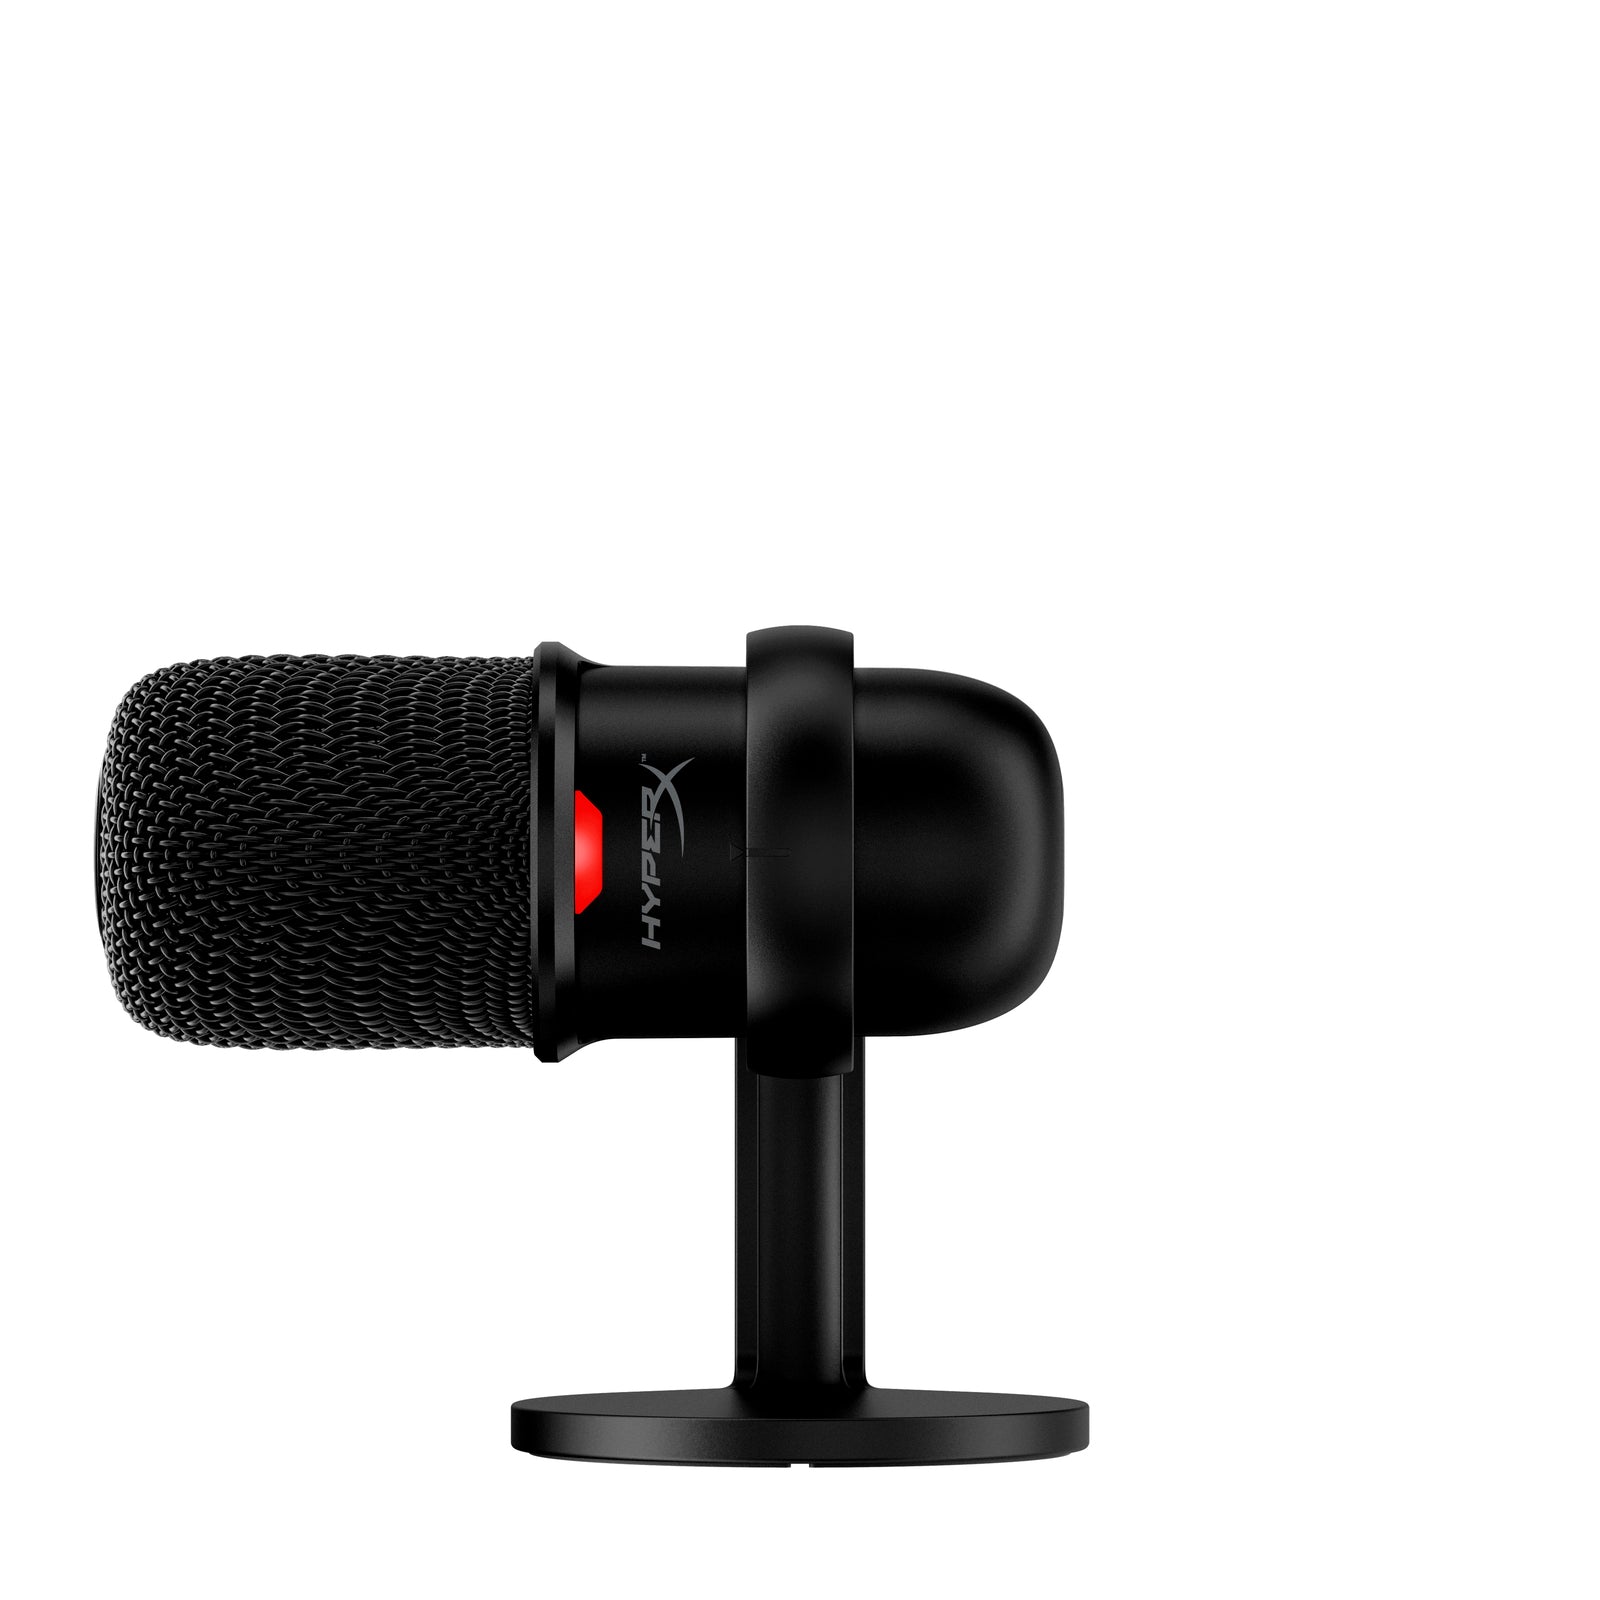 HyperX SoloCast: reseña de este micrófono para creadores de contenido -  Dispositivos - Tecnología 